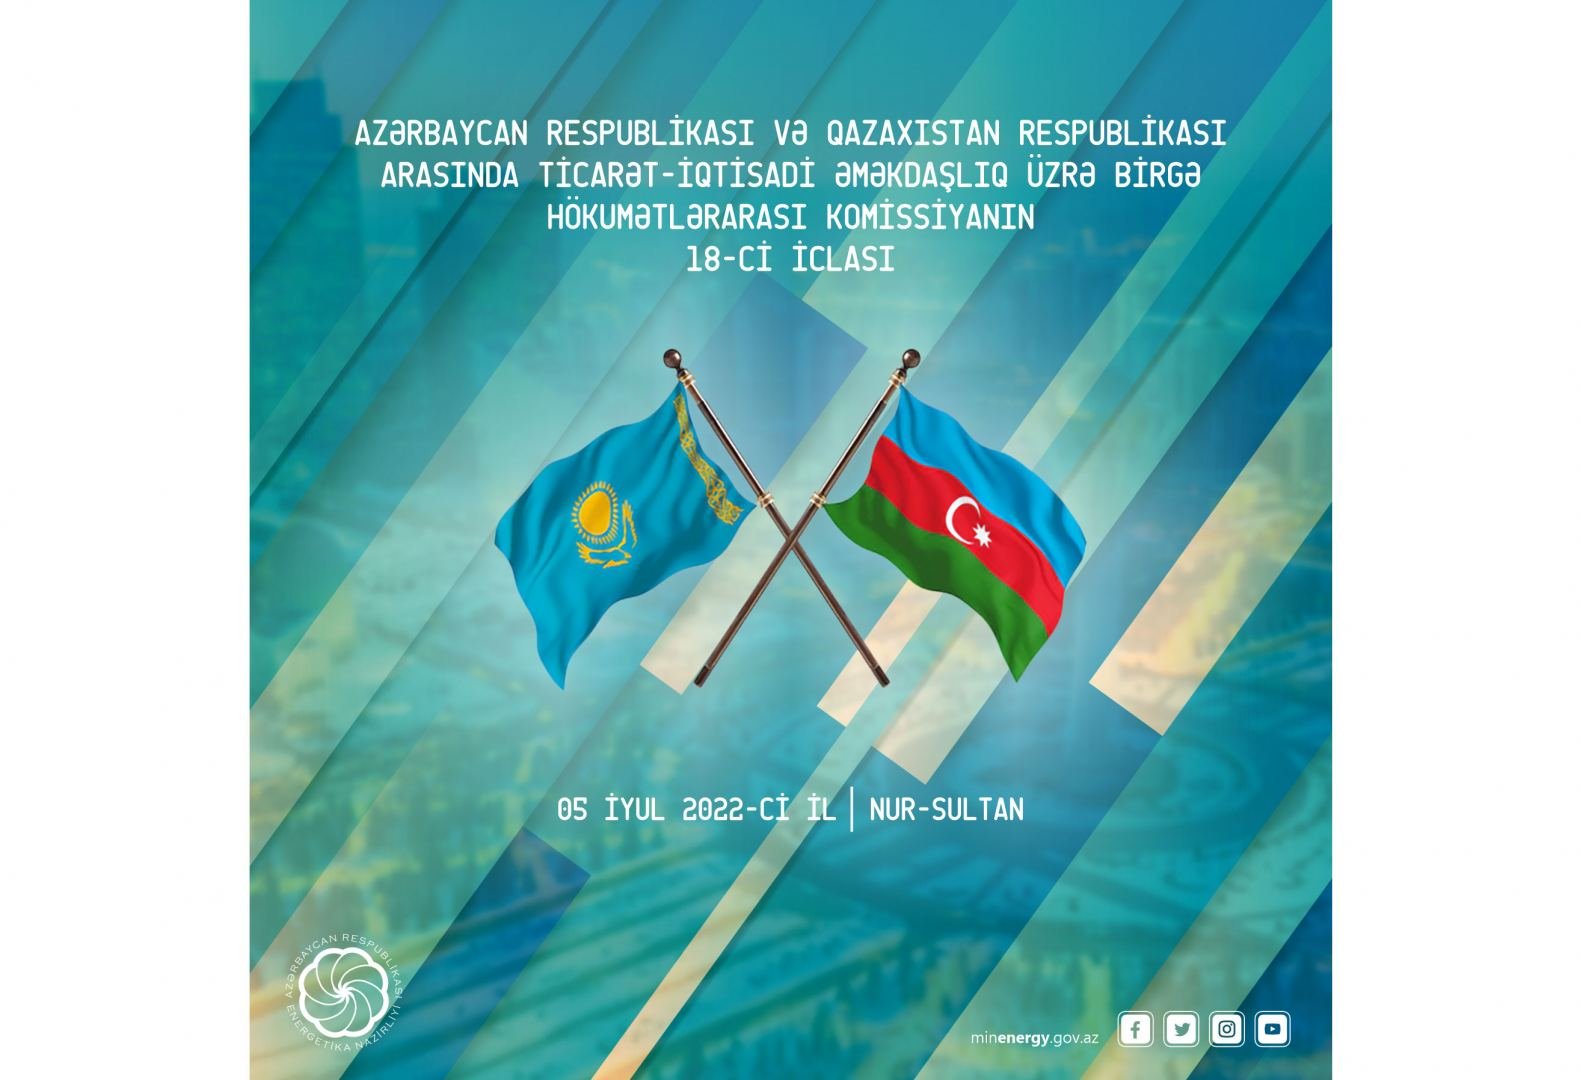 Azərbaycan - Qazaxıstan Birgə Hökumətlərarası Komissiyanın 18-ci iclası keçiriləcək